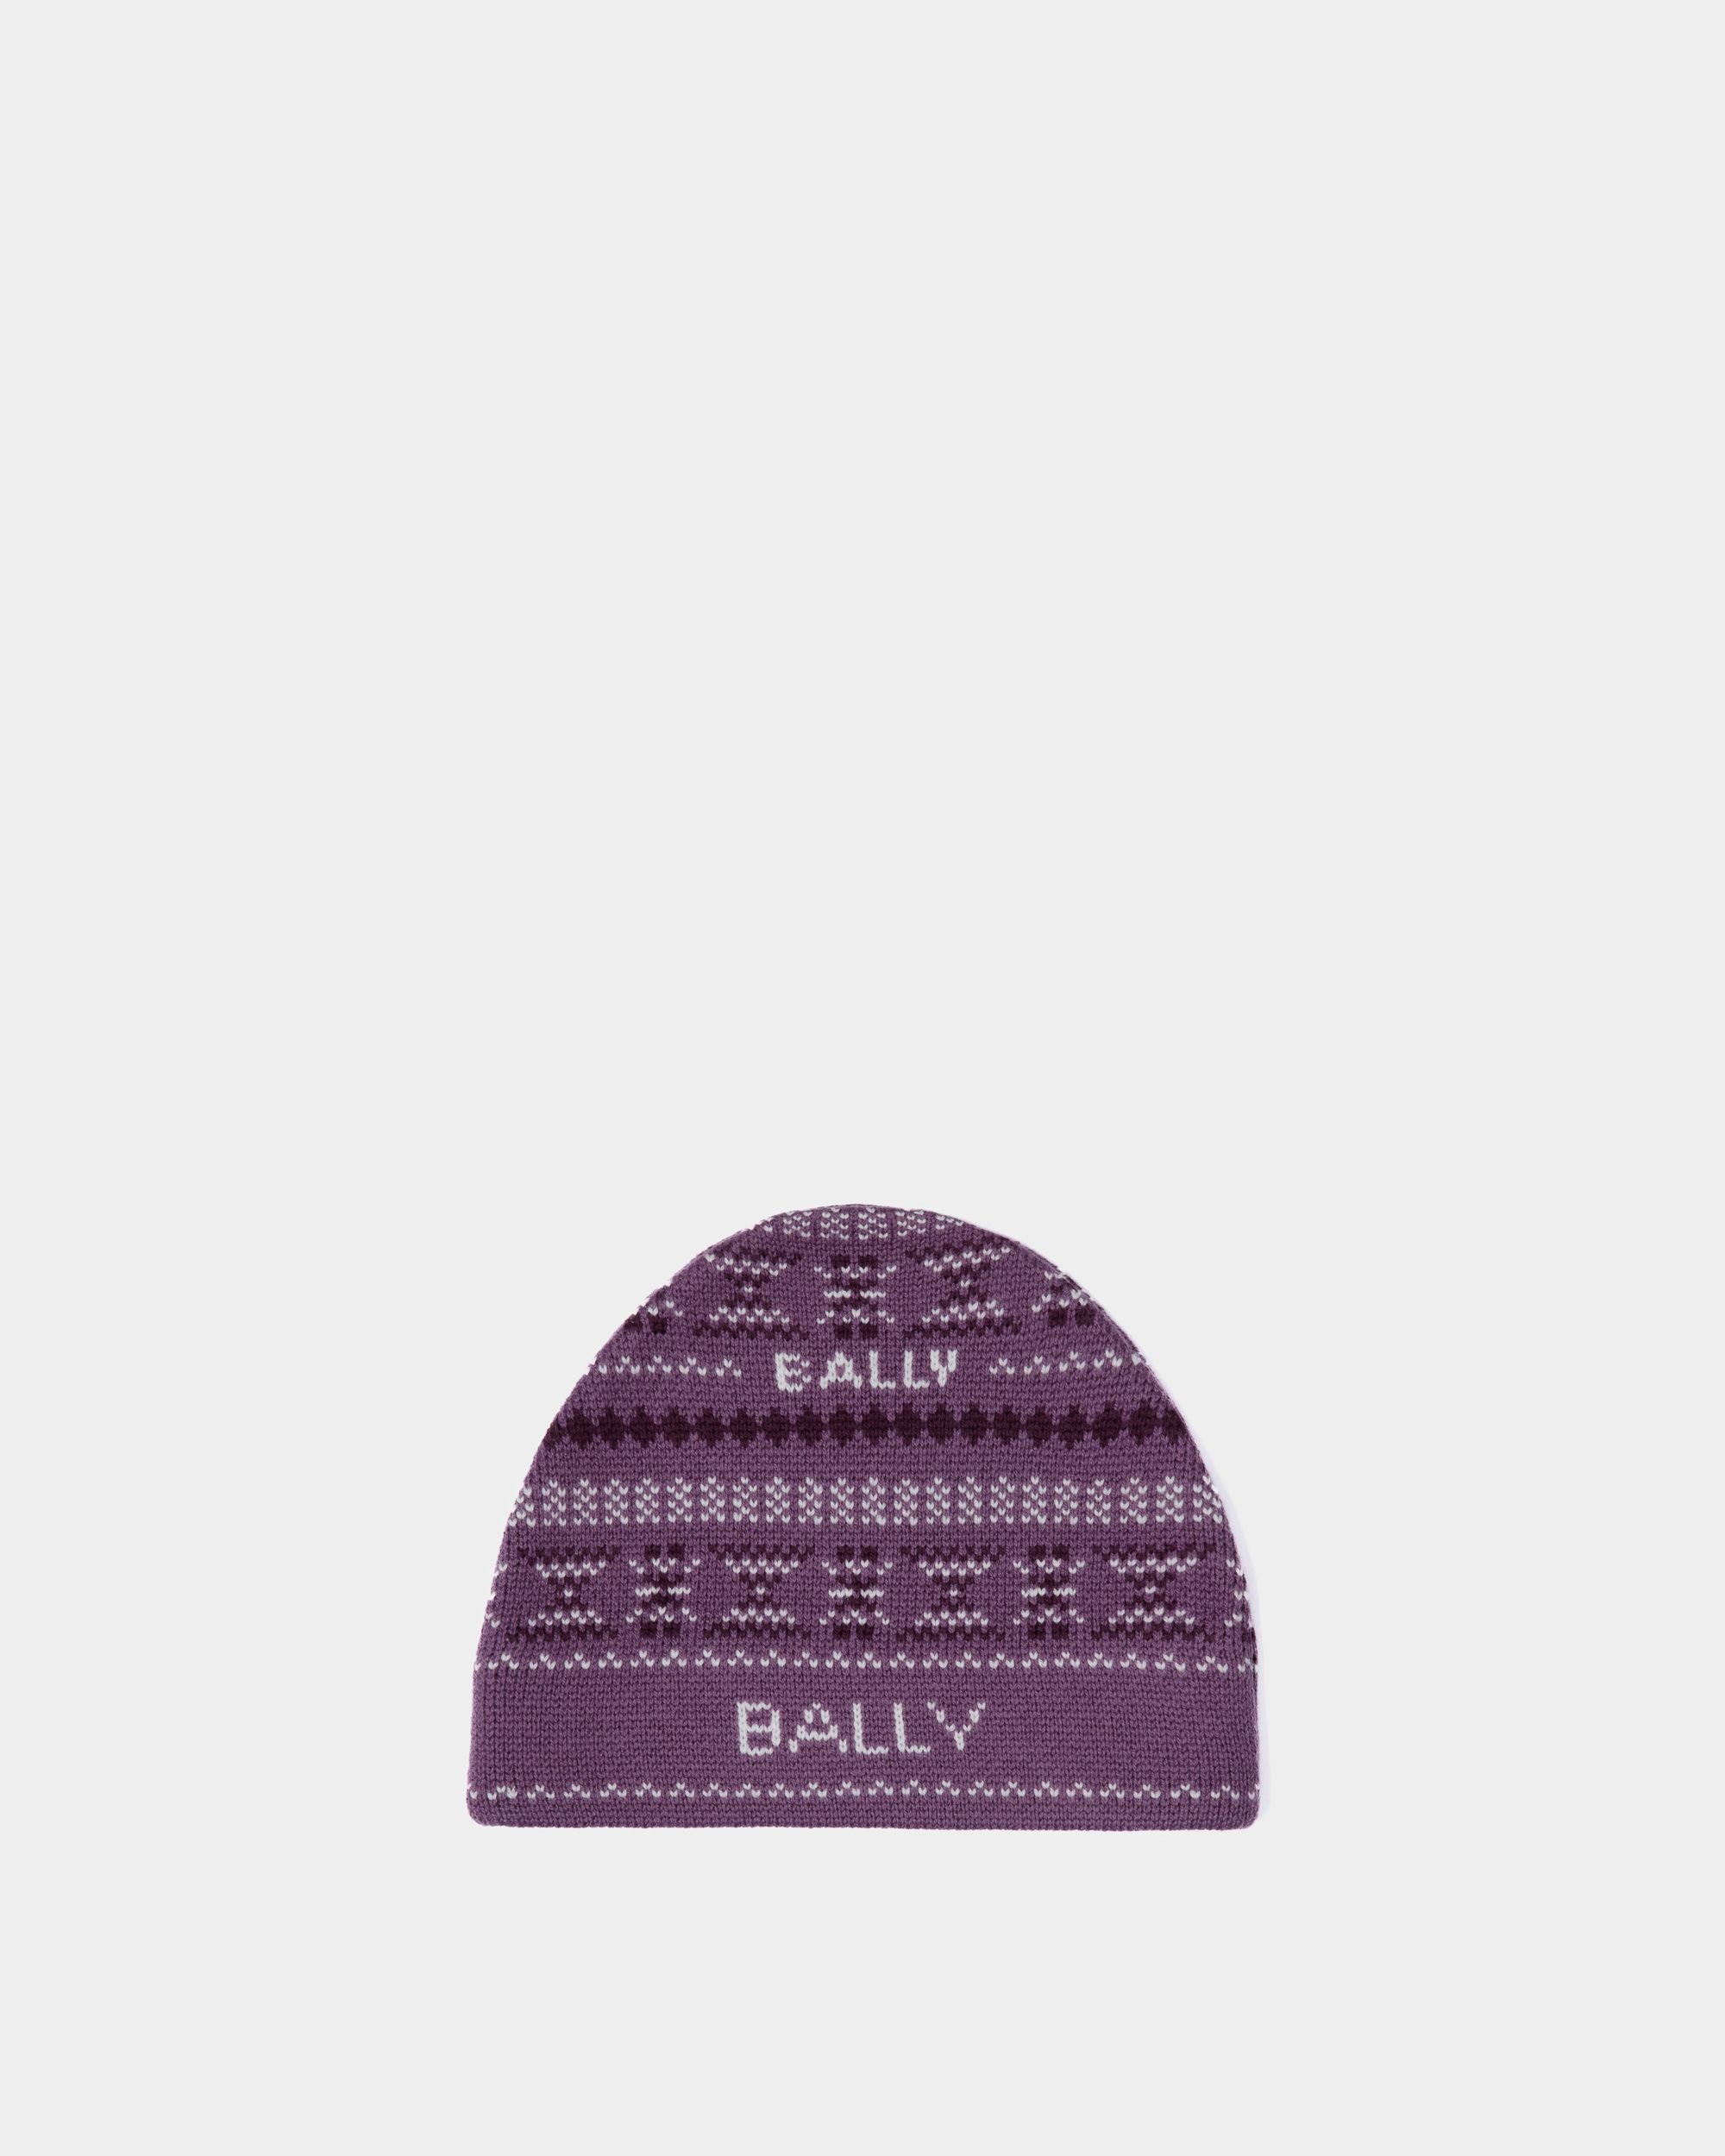 Cappello a cuffia da donna in lana viola | Bally | Still Life Fronte